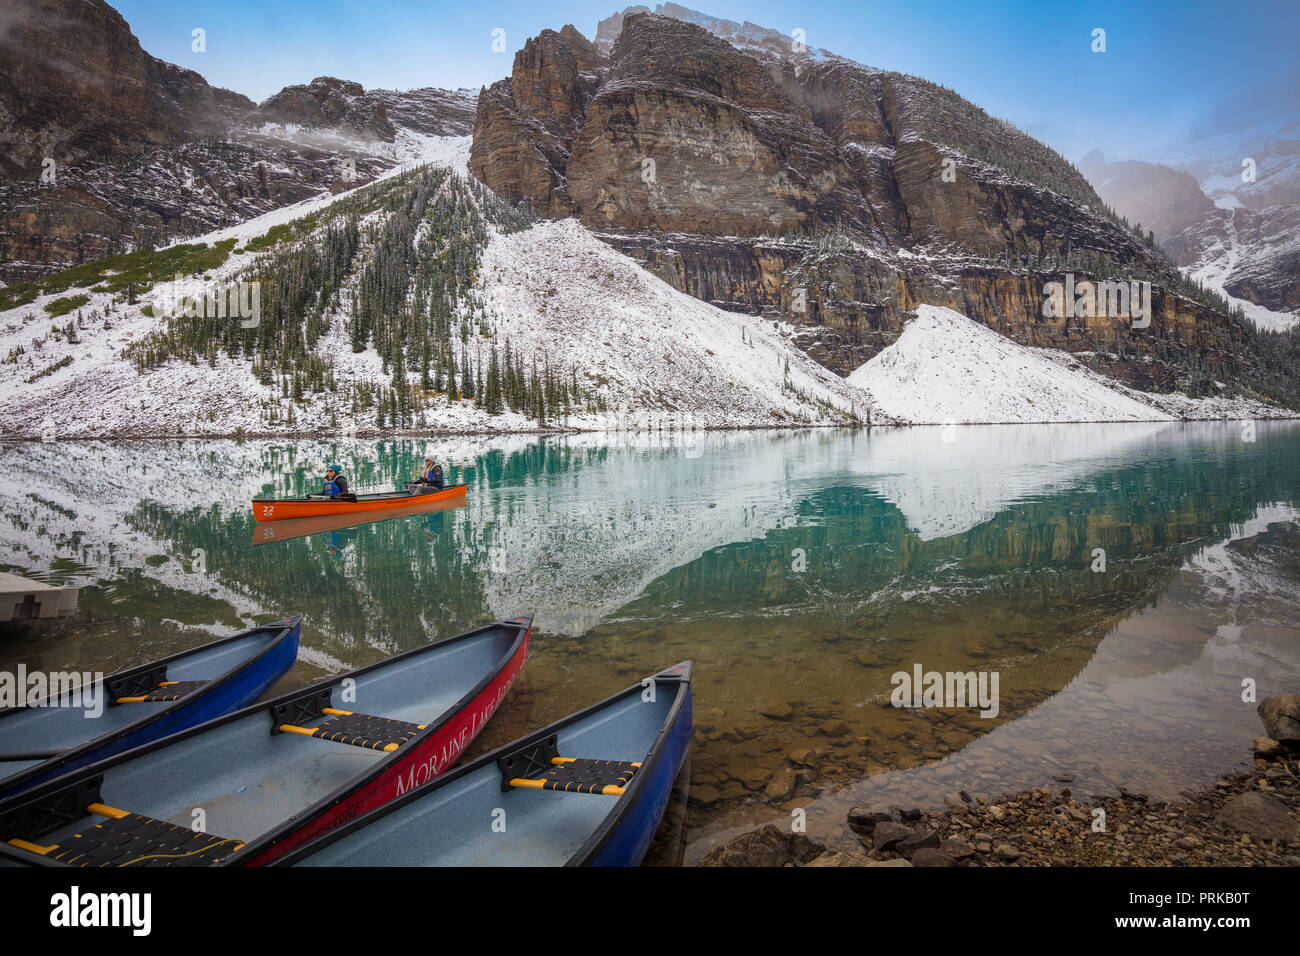 El Lago Moraine es un lago glacial y alimentado en el Banff National Park, a 14 km (8,7 millas) a las afueras del pueblo de Lake Louise, Alberta, Canadá. Foto de stock